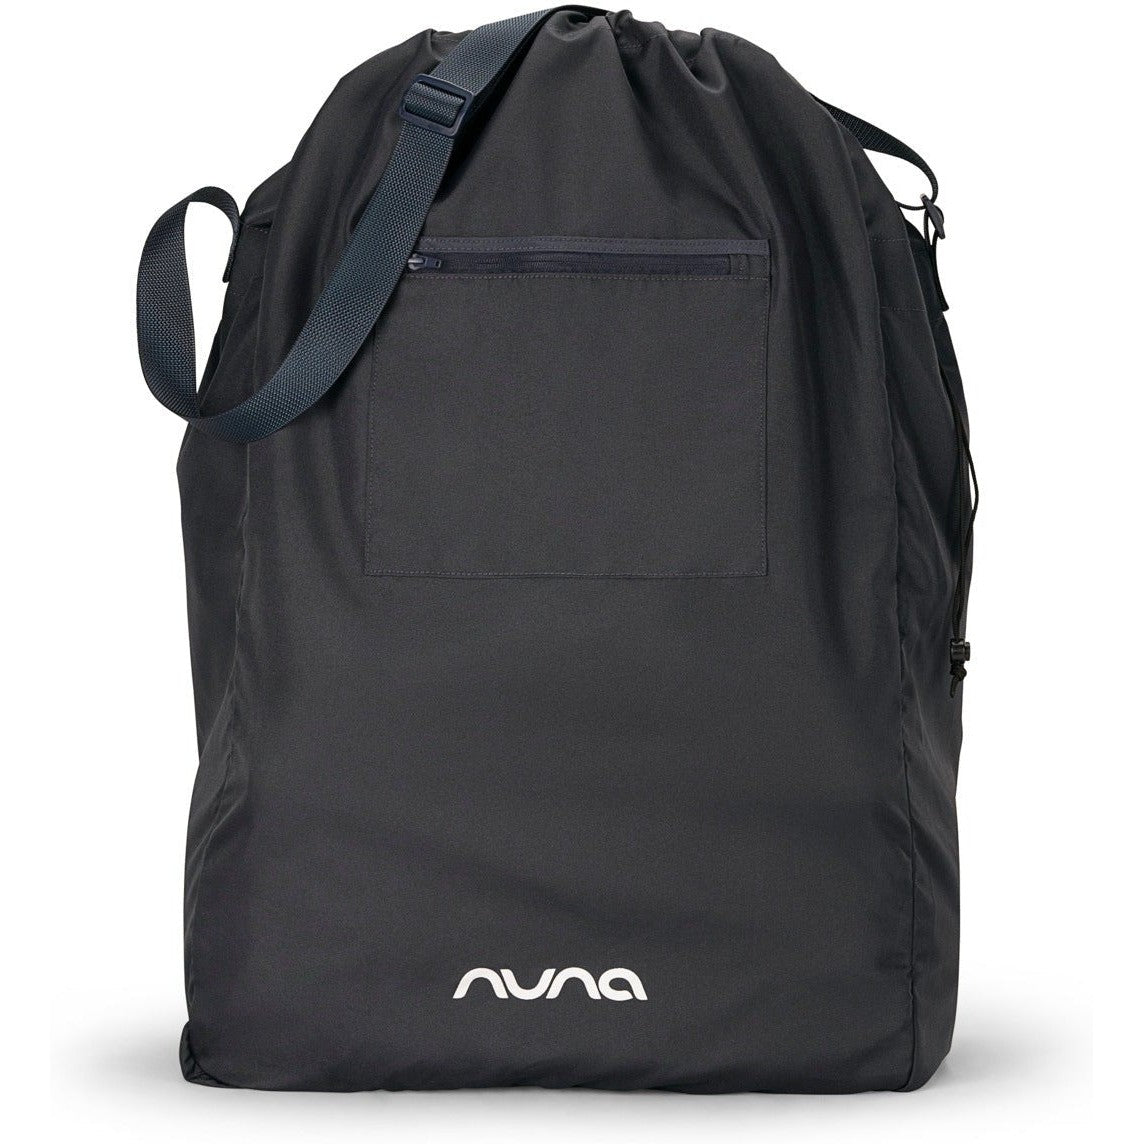 Nuna Trvl LX Stroller + Pipa Urbn Travel System - Twinkle Twinkle Little One